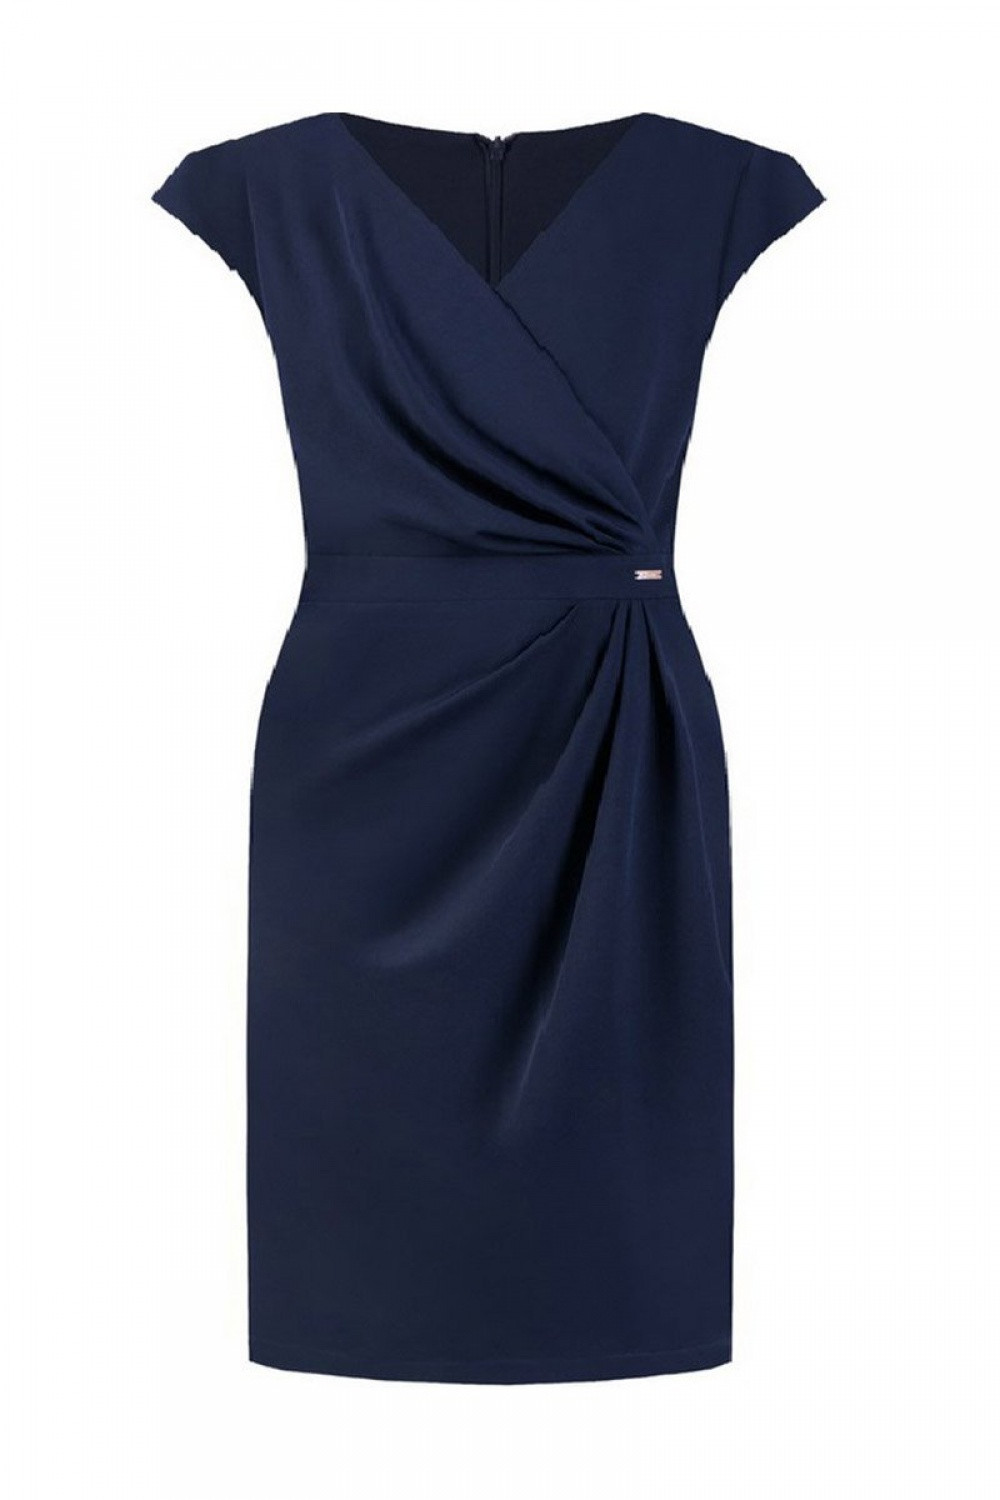 Dámské šaty Oktavia model 108514 Tmavě modrá - Jersa tmavě modrá 50